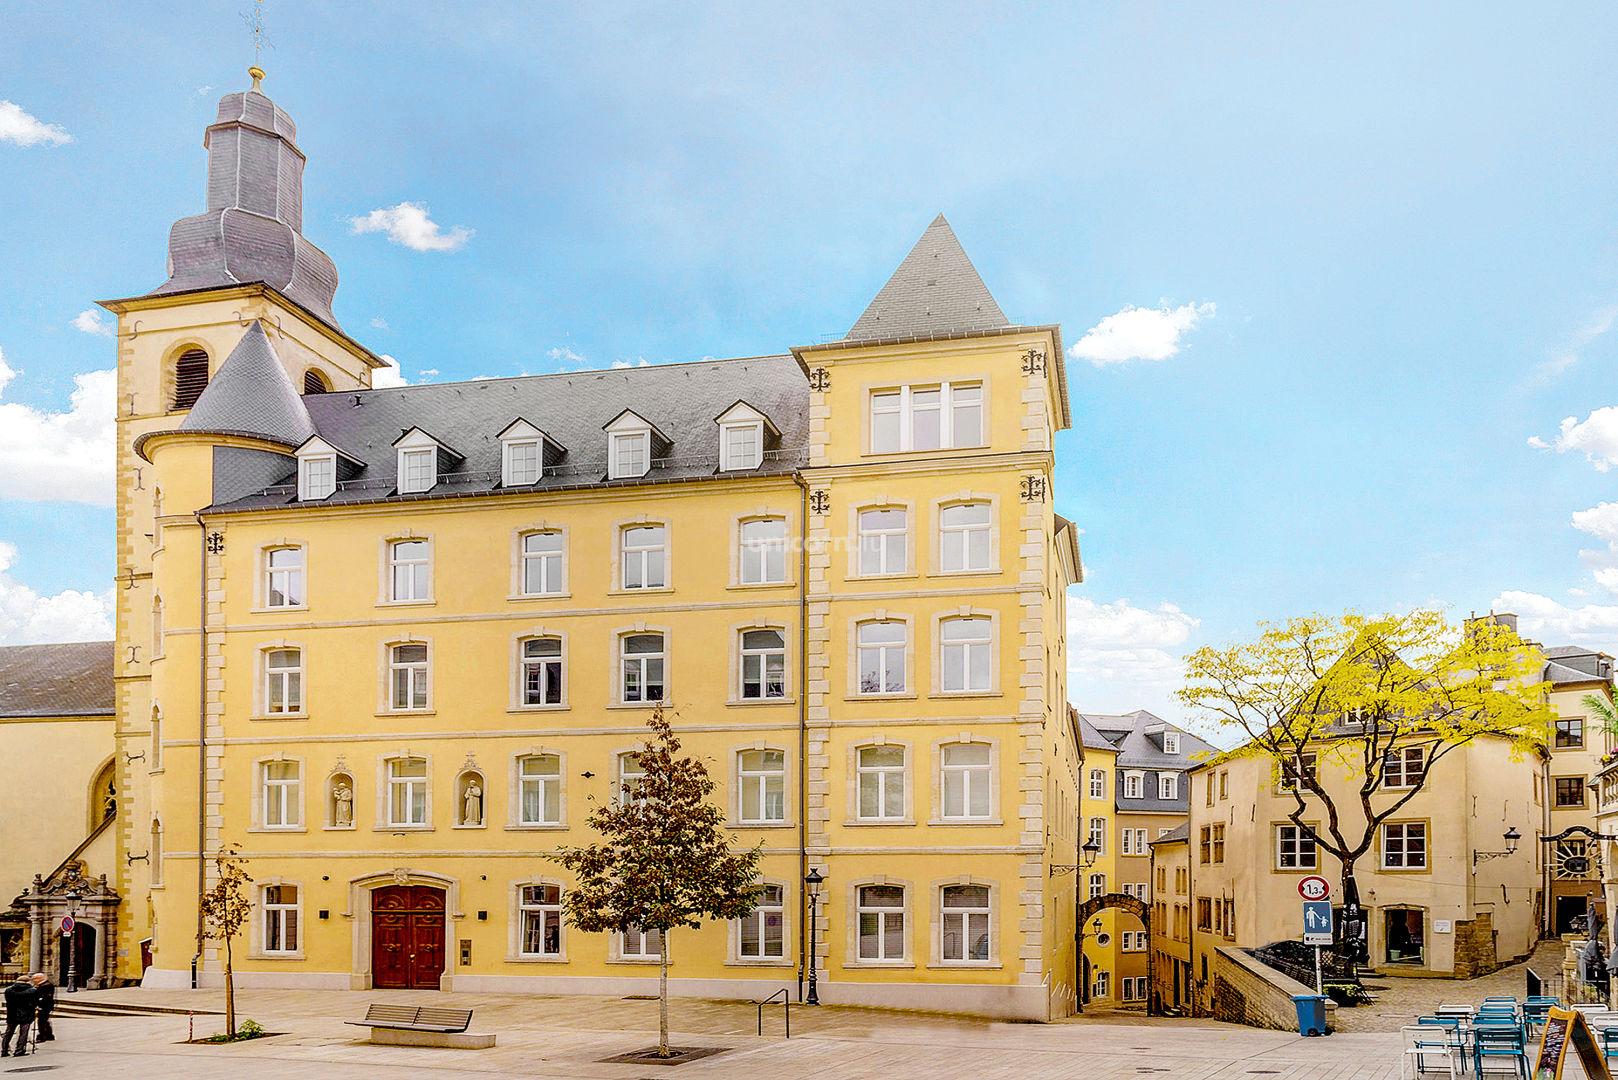  LE CLOITRE DE SAINT - FRANCOIS - Projet immobilier à Luxembourg